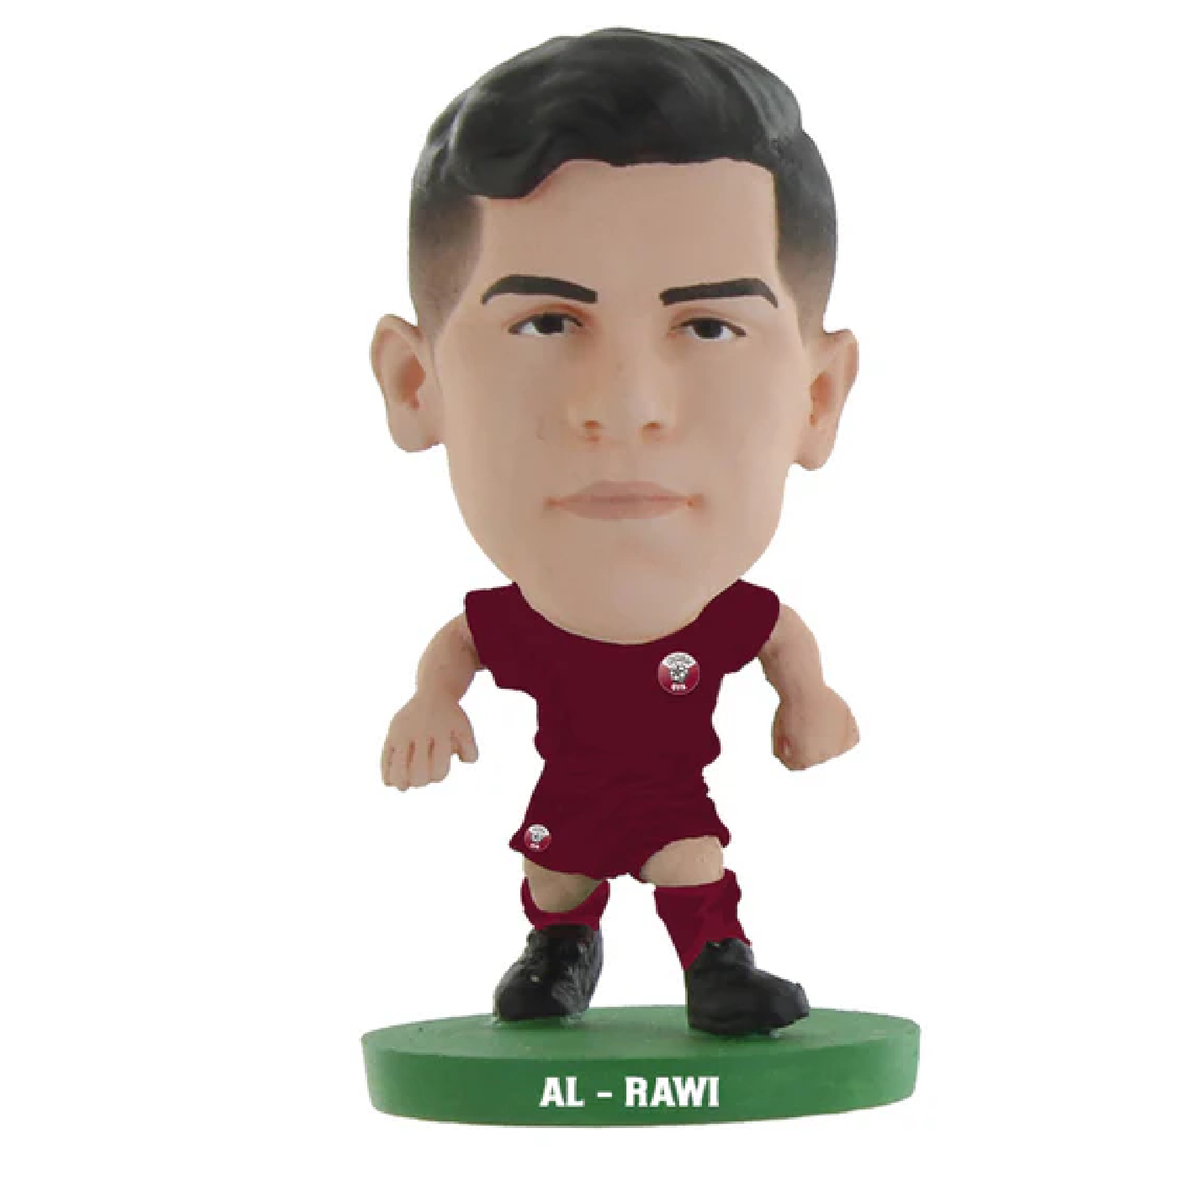 Soccerstarz Qatar Bassam Al Rawl Home Kit Figures, 405485